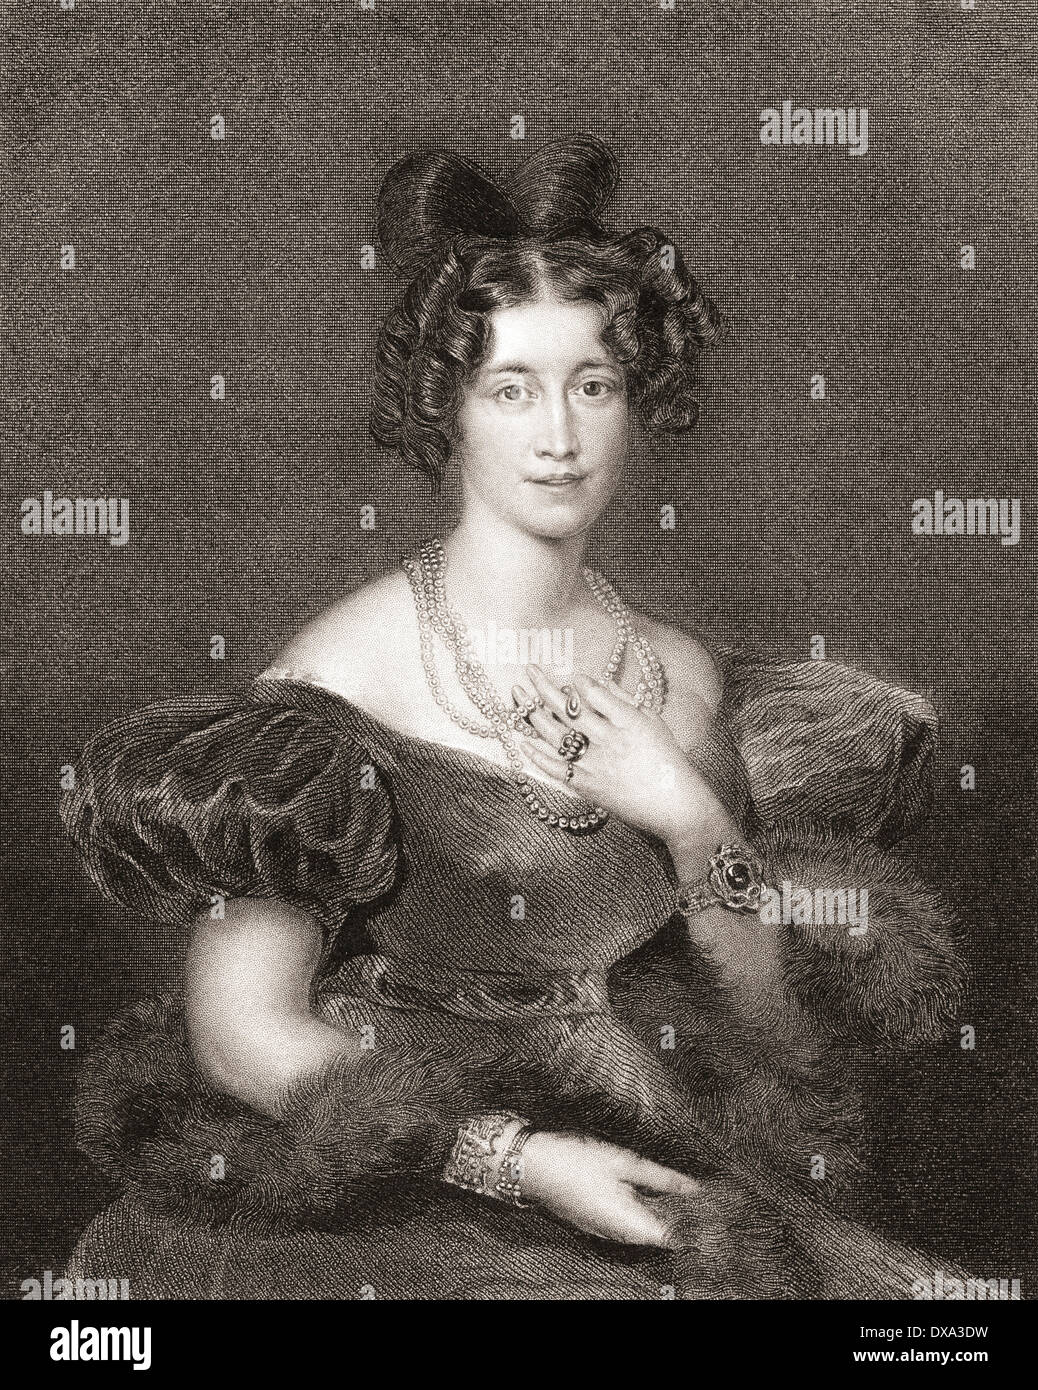 Sophia Sidney, la Baronessa De L'Isle e Dudley, née FitzClarence, 1796 - 1837. Figlia di Guglielmo IV e Dorothea Giordania. Foto Stock